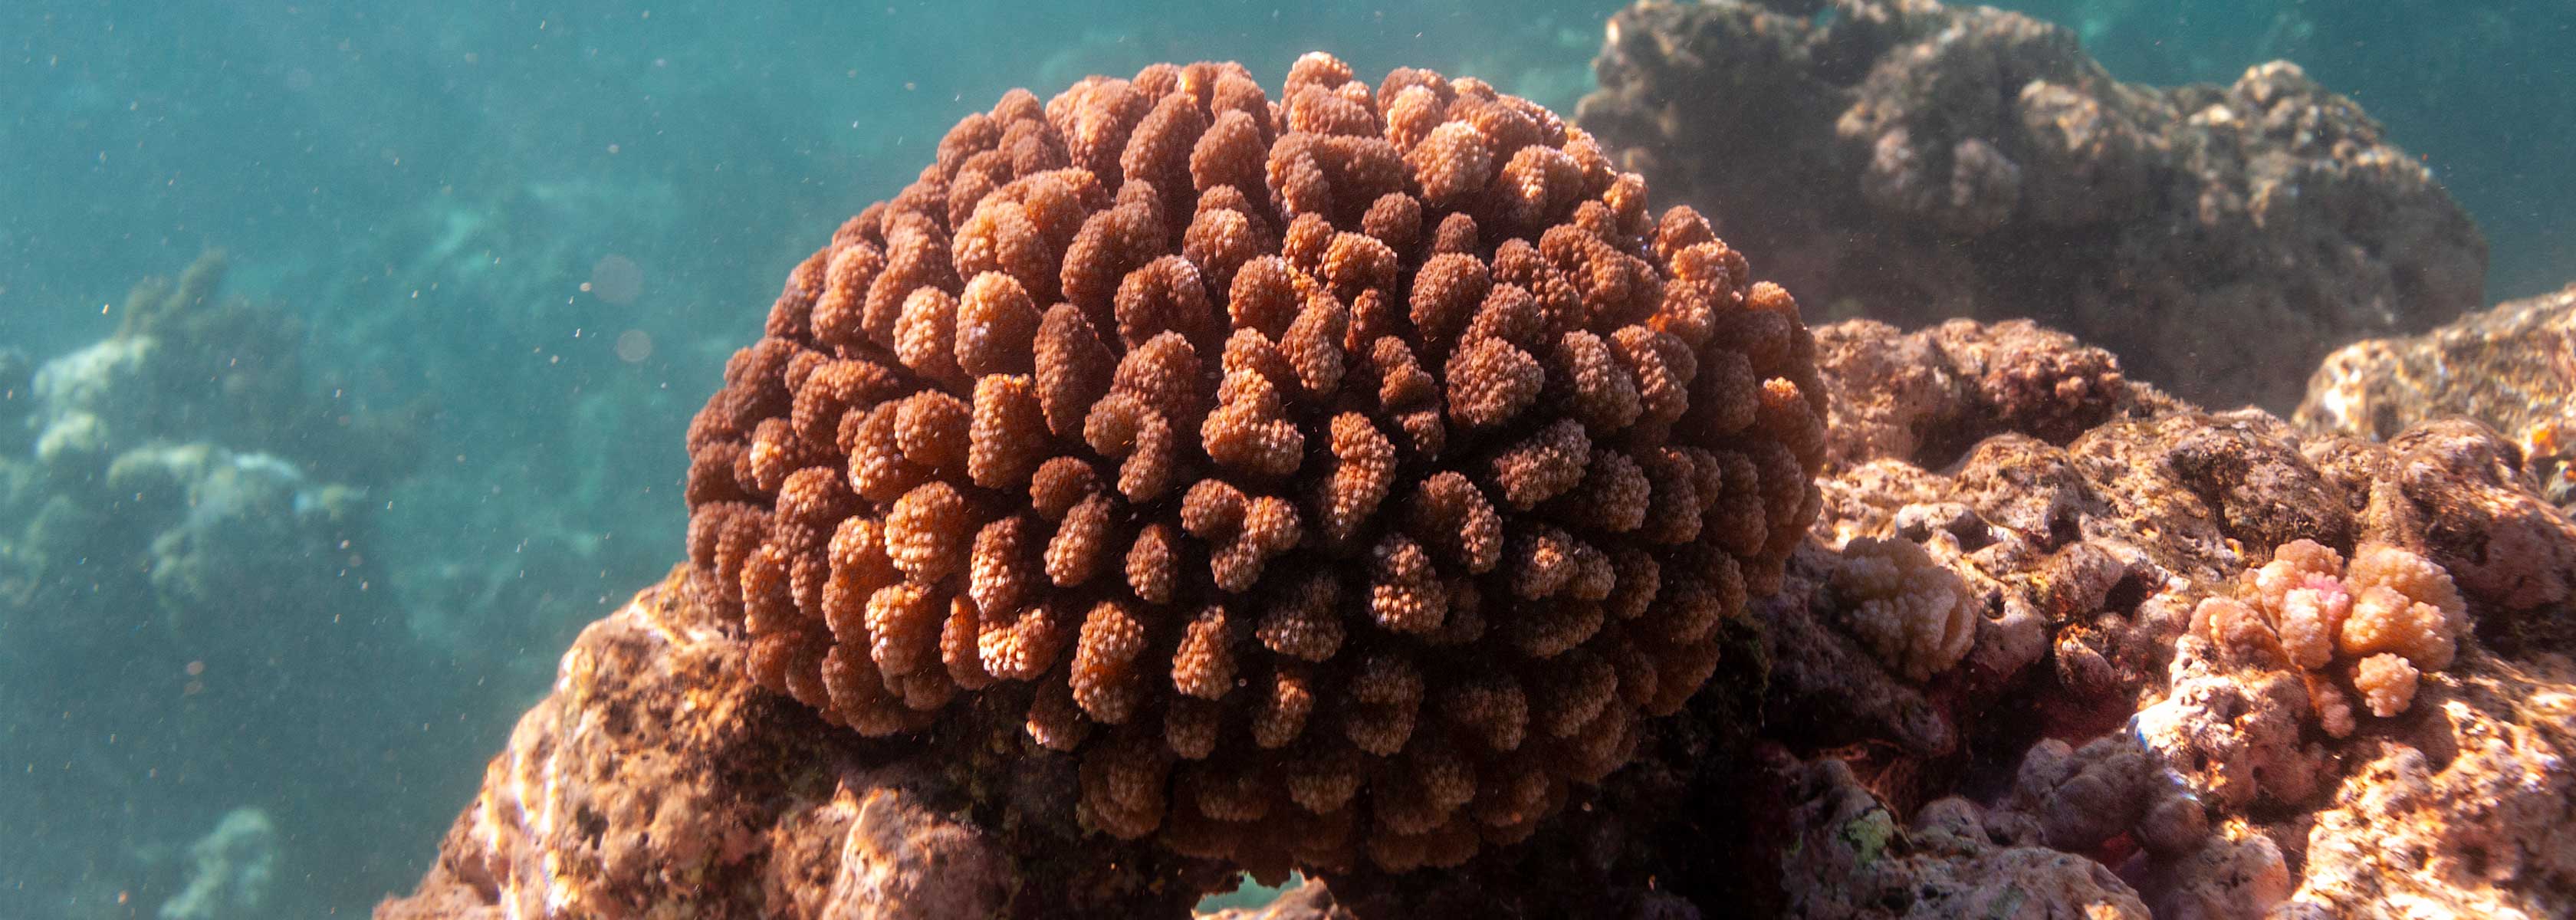 coral reef at Mo'orea